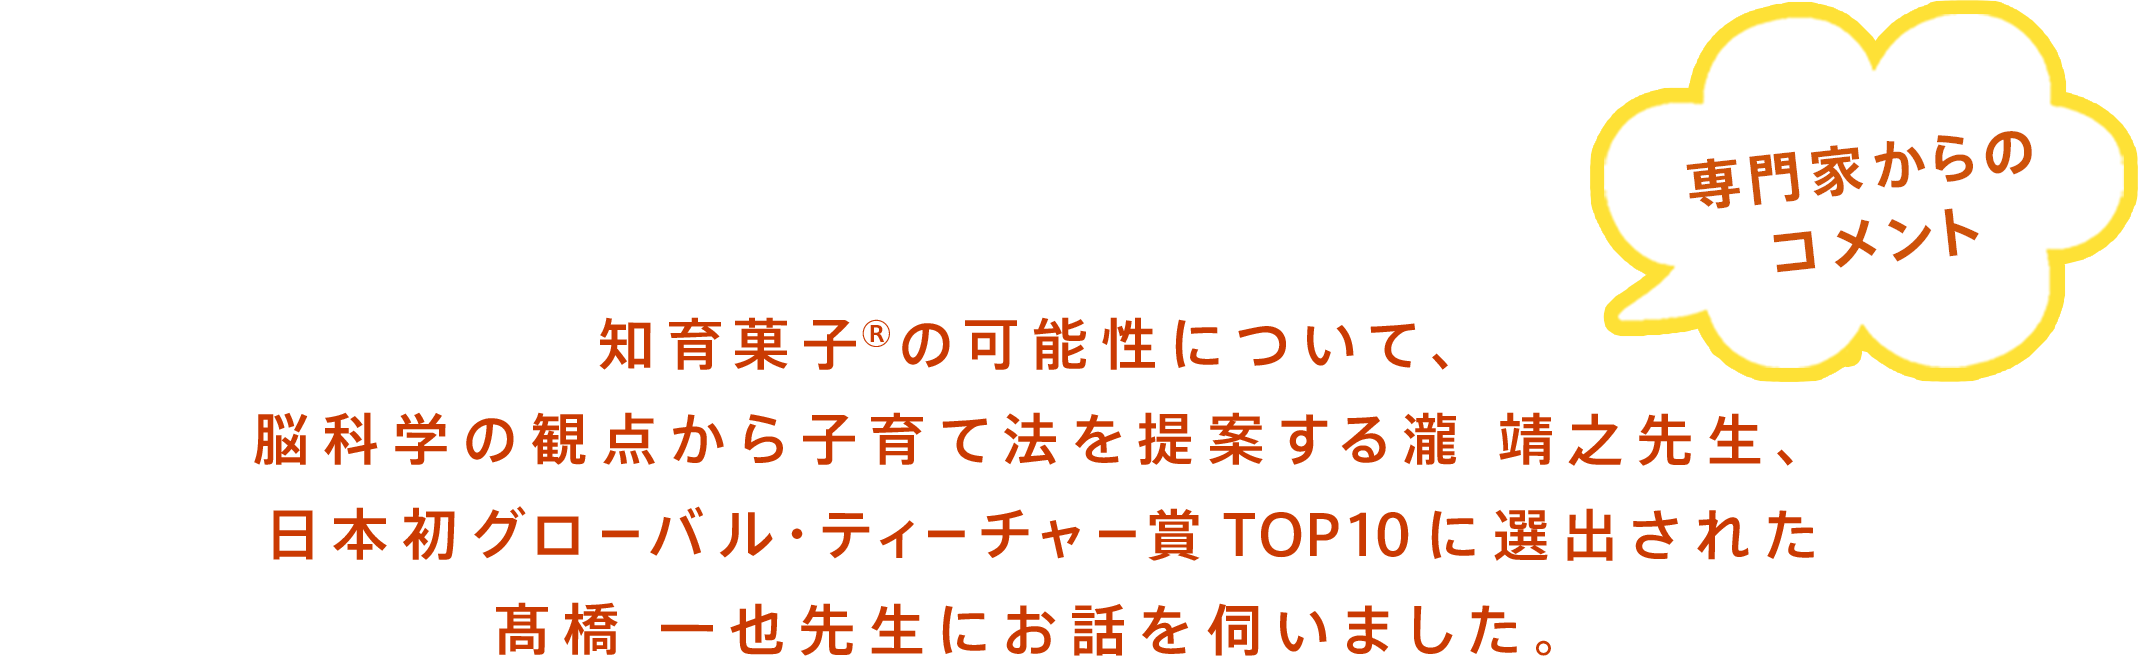 知育菓子®に期待していることについて、脳科学の観点から子育て法を提案する瀧 靖之先生、日本初グローバル・ティーチャー賞TOP10に選出された髙橋 一也先生にお話を伺いました。